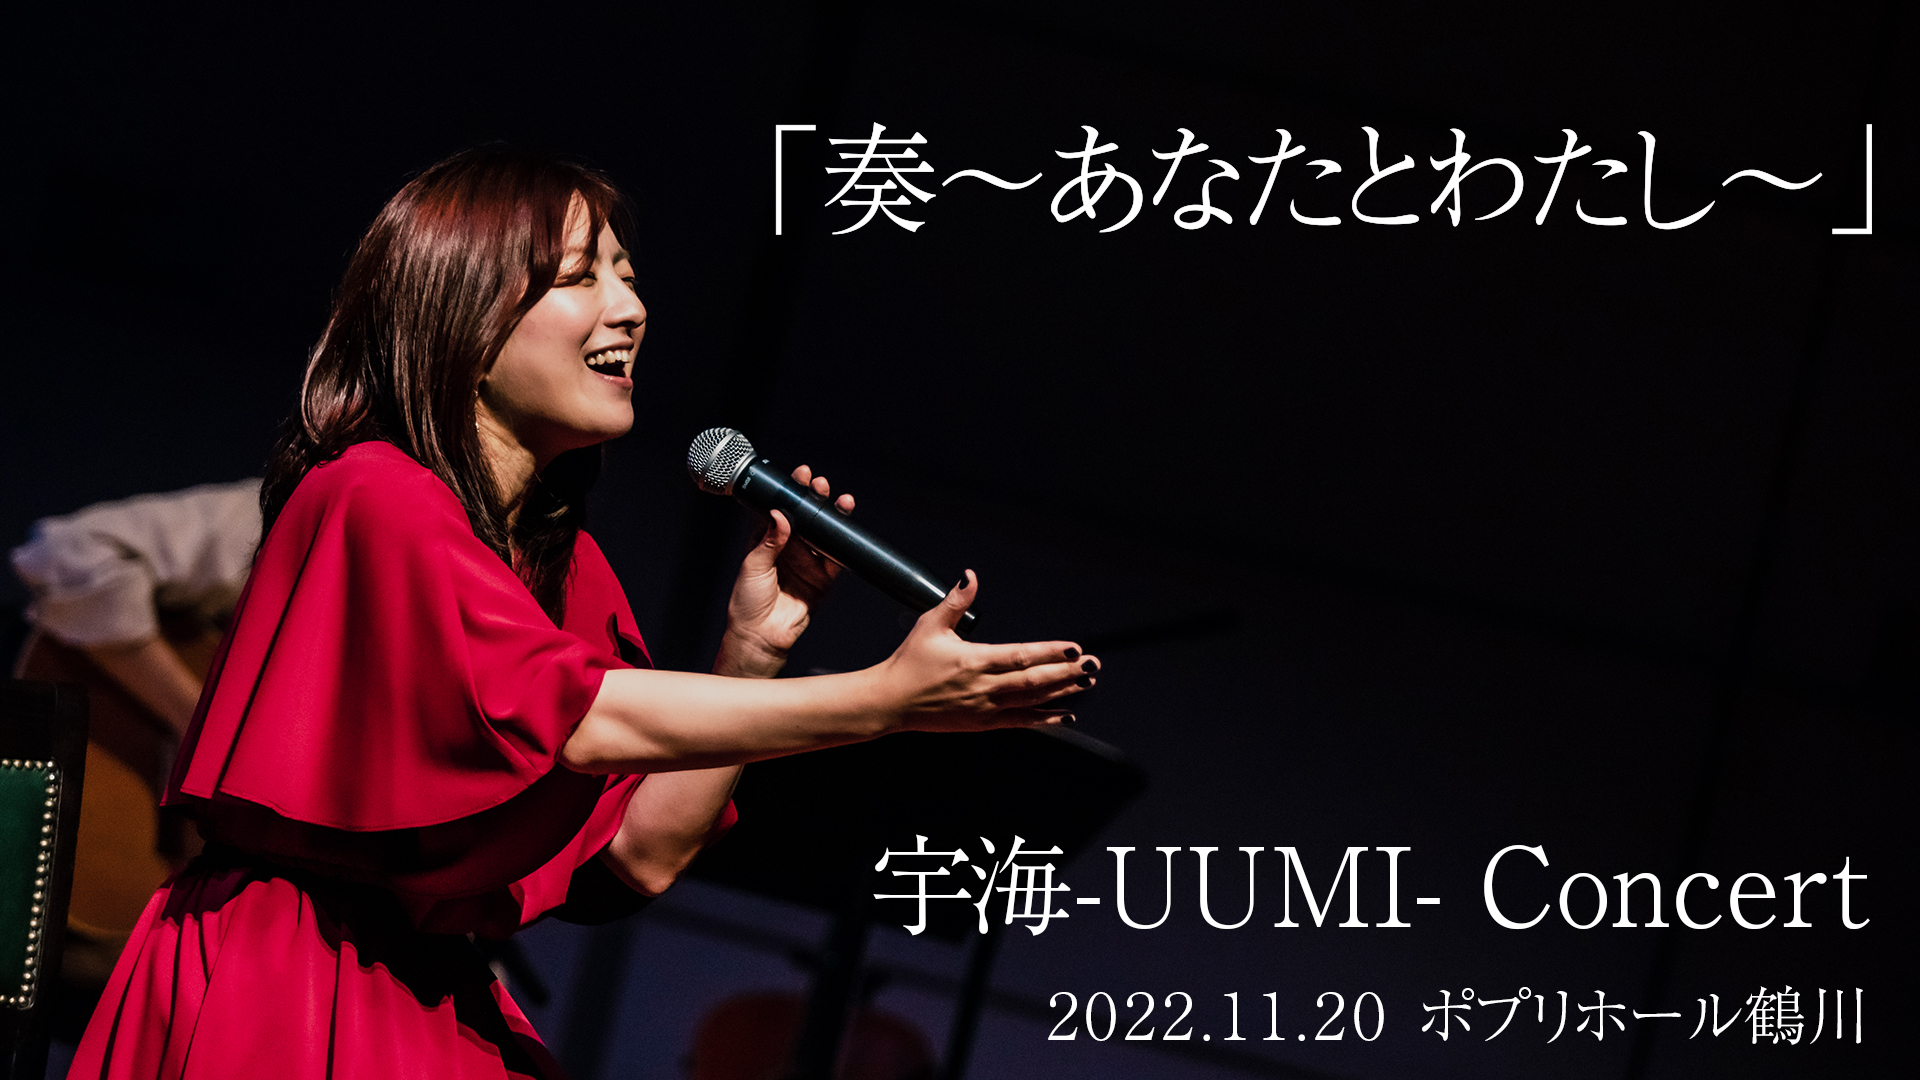 宇海-UUMI- Concert 「奏 〜あなたとわたし〜」